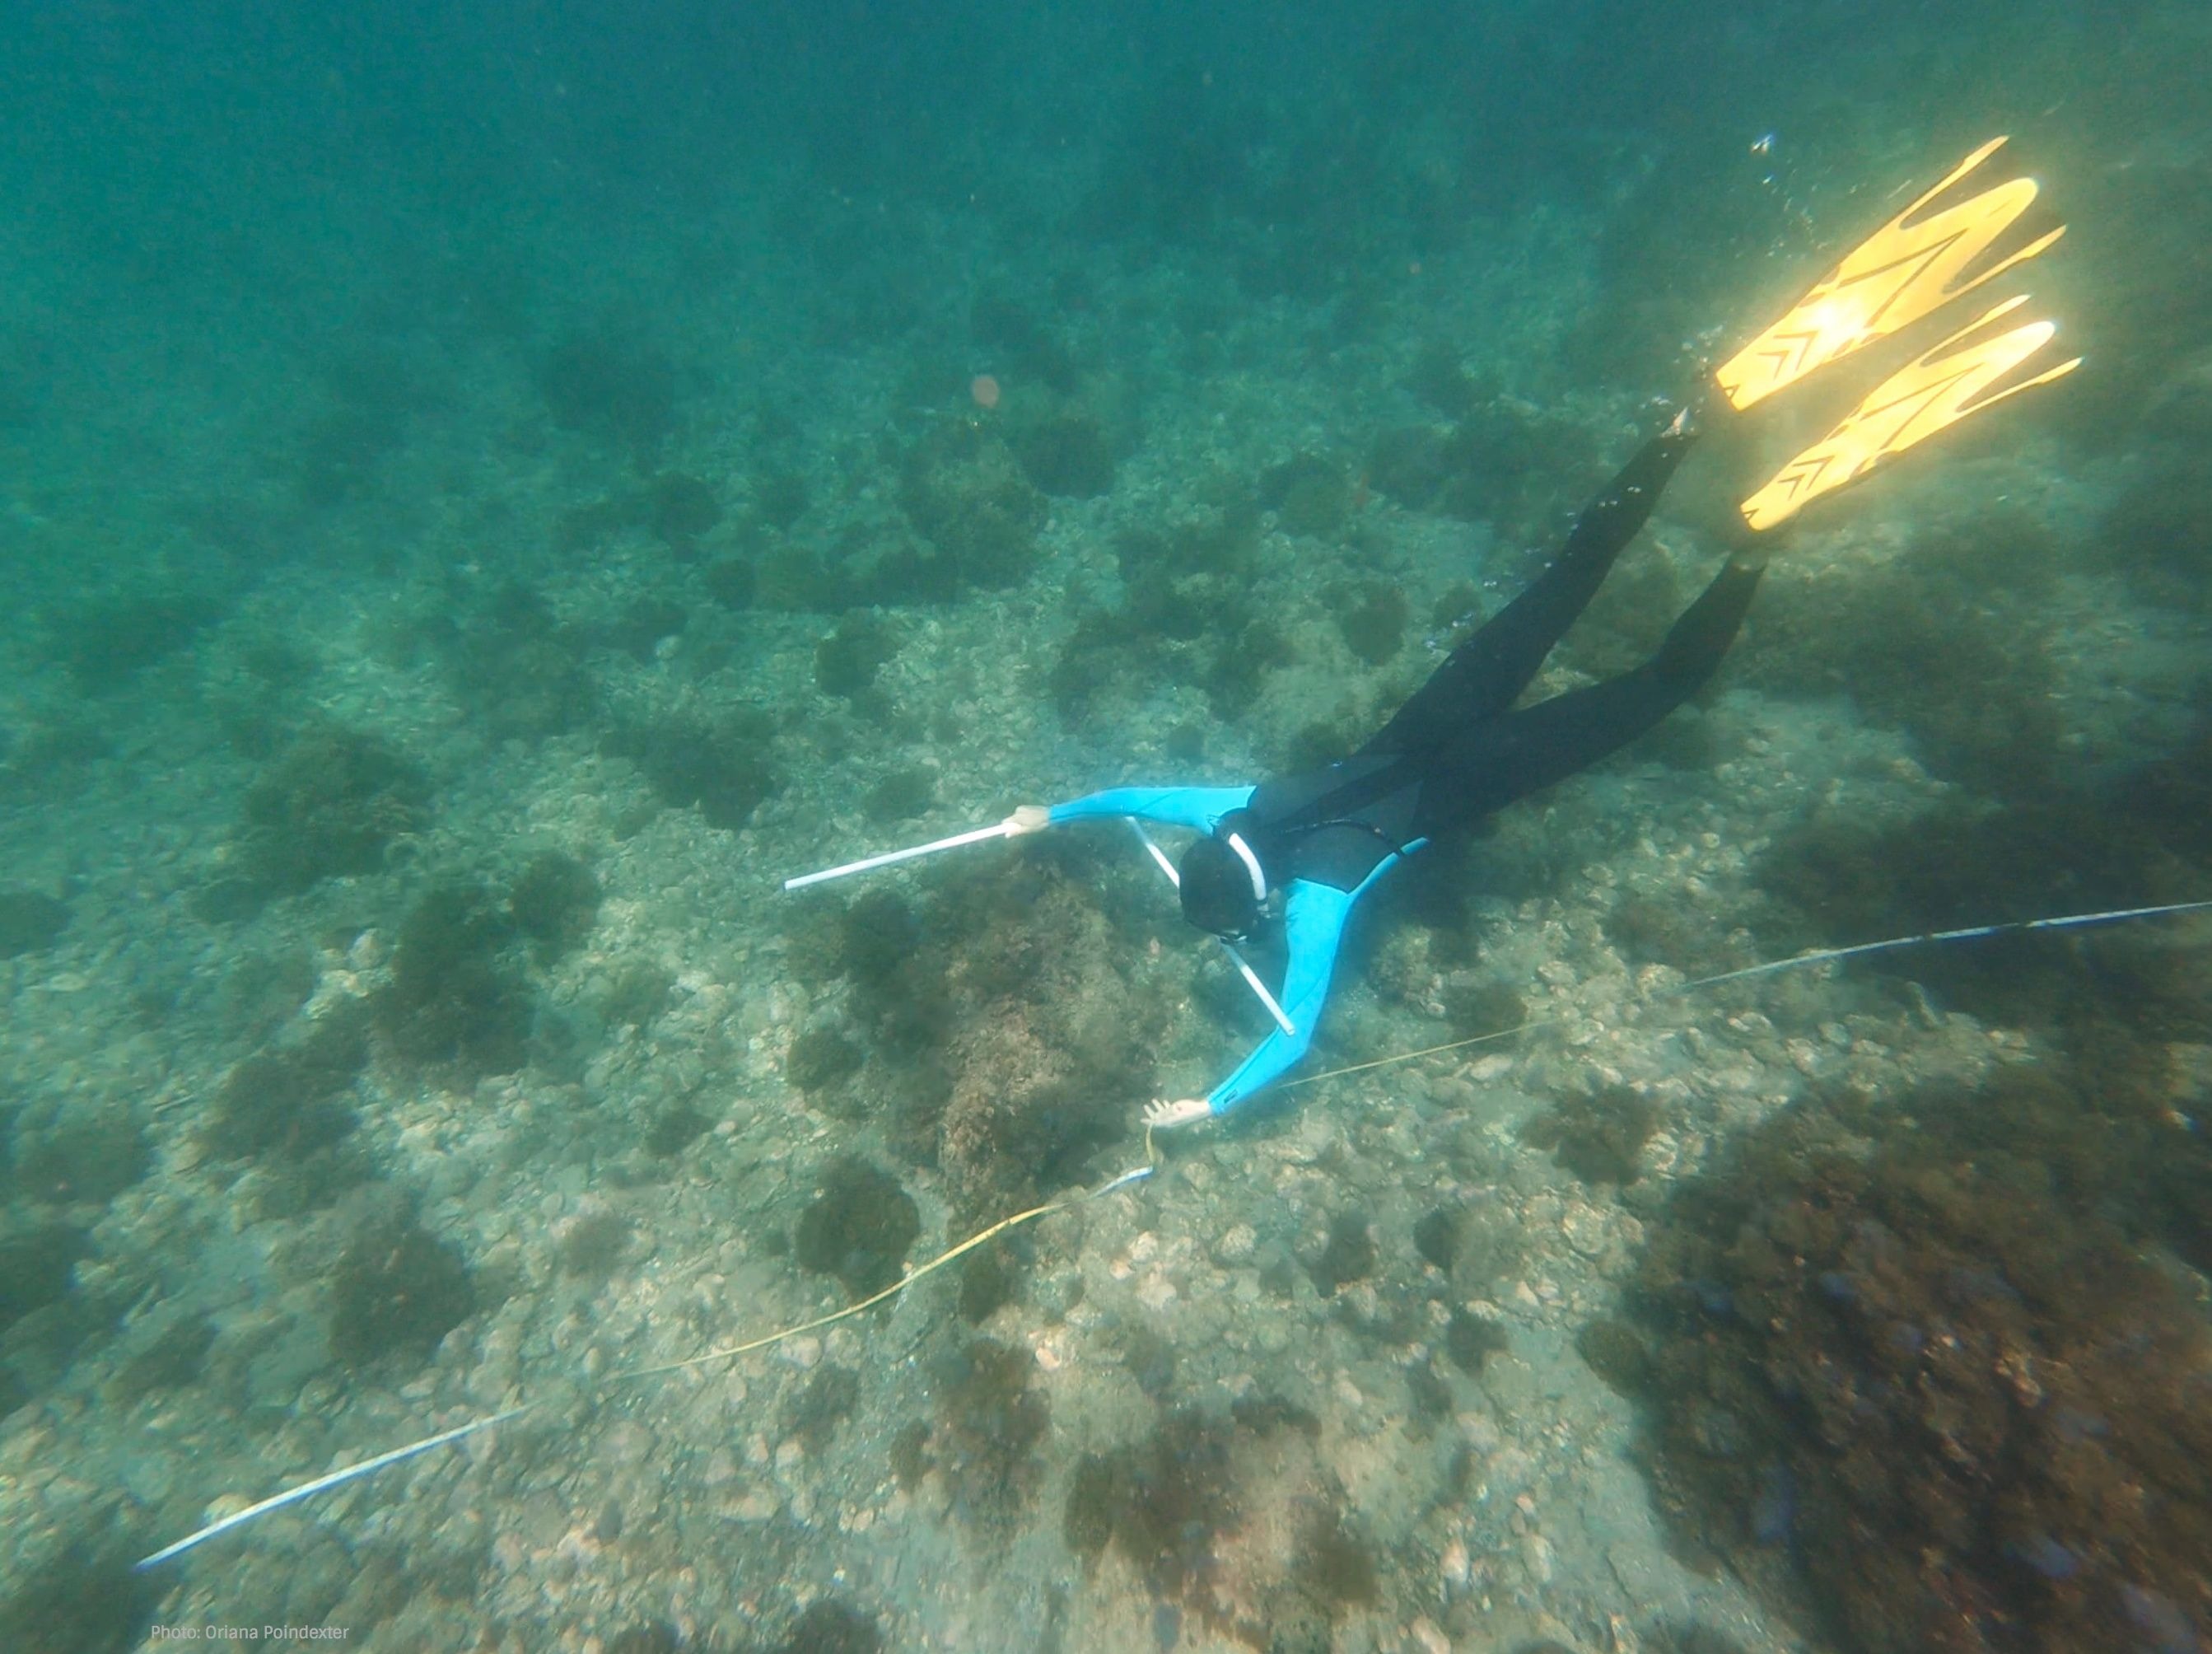 Diver in blue-trimmed wetsuit swimming across rocky ocean floor.